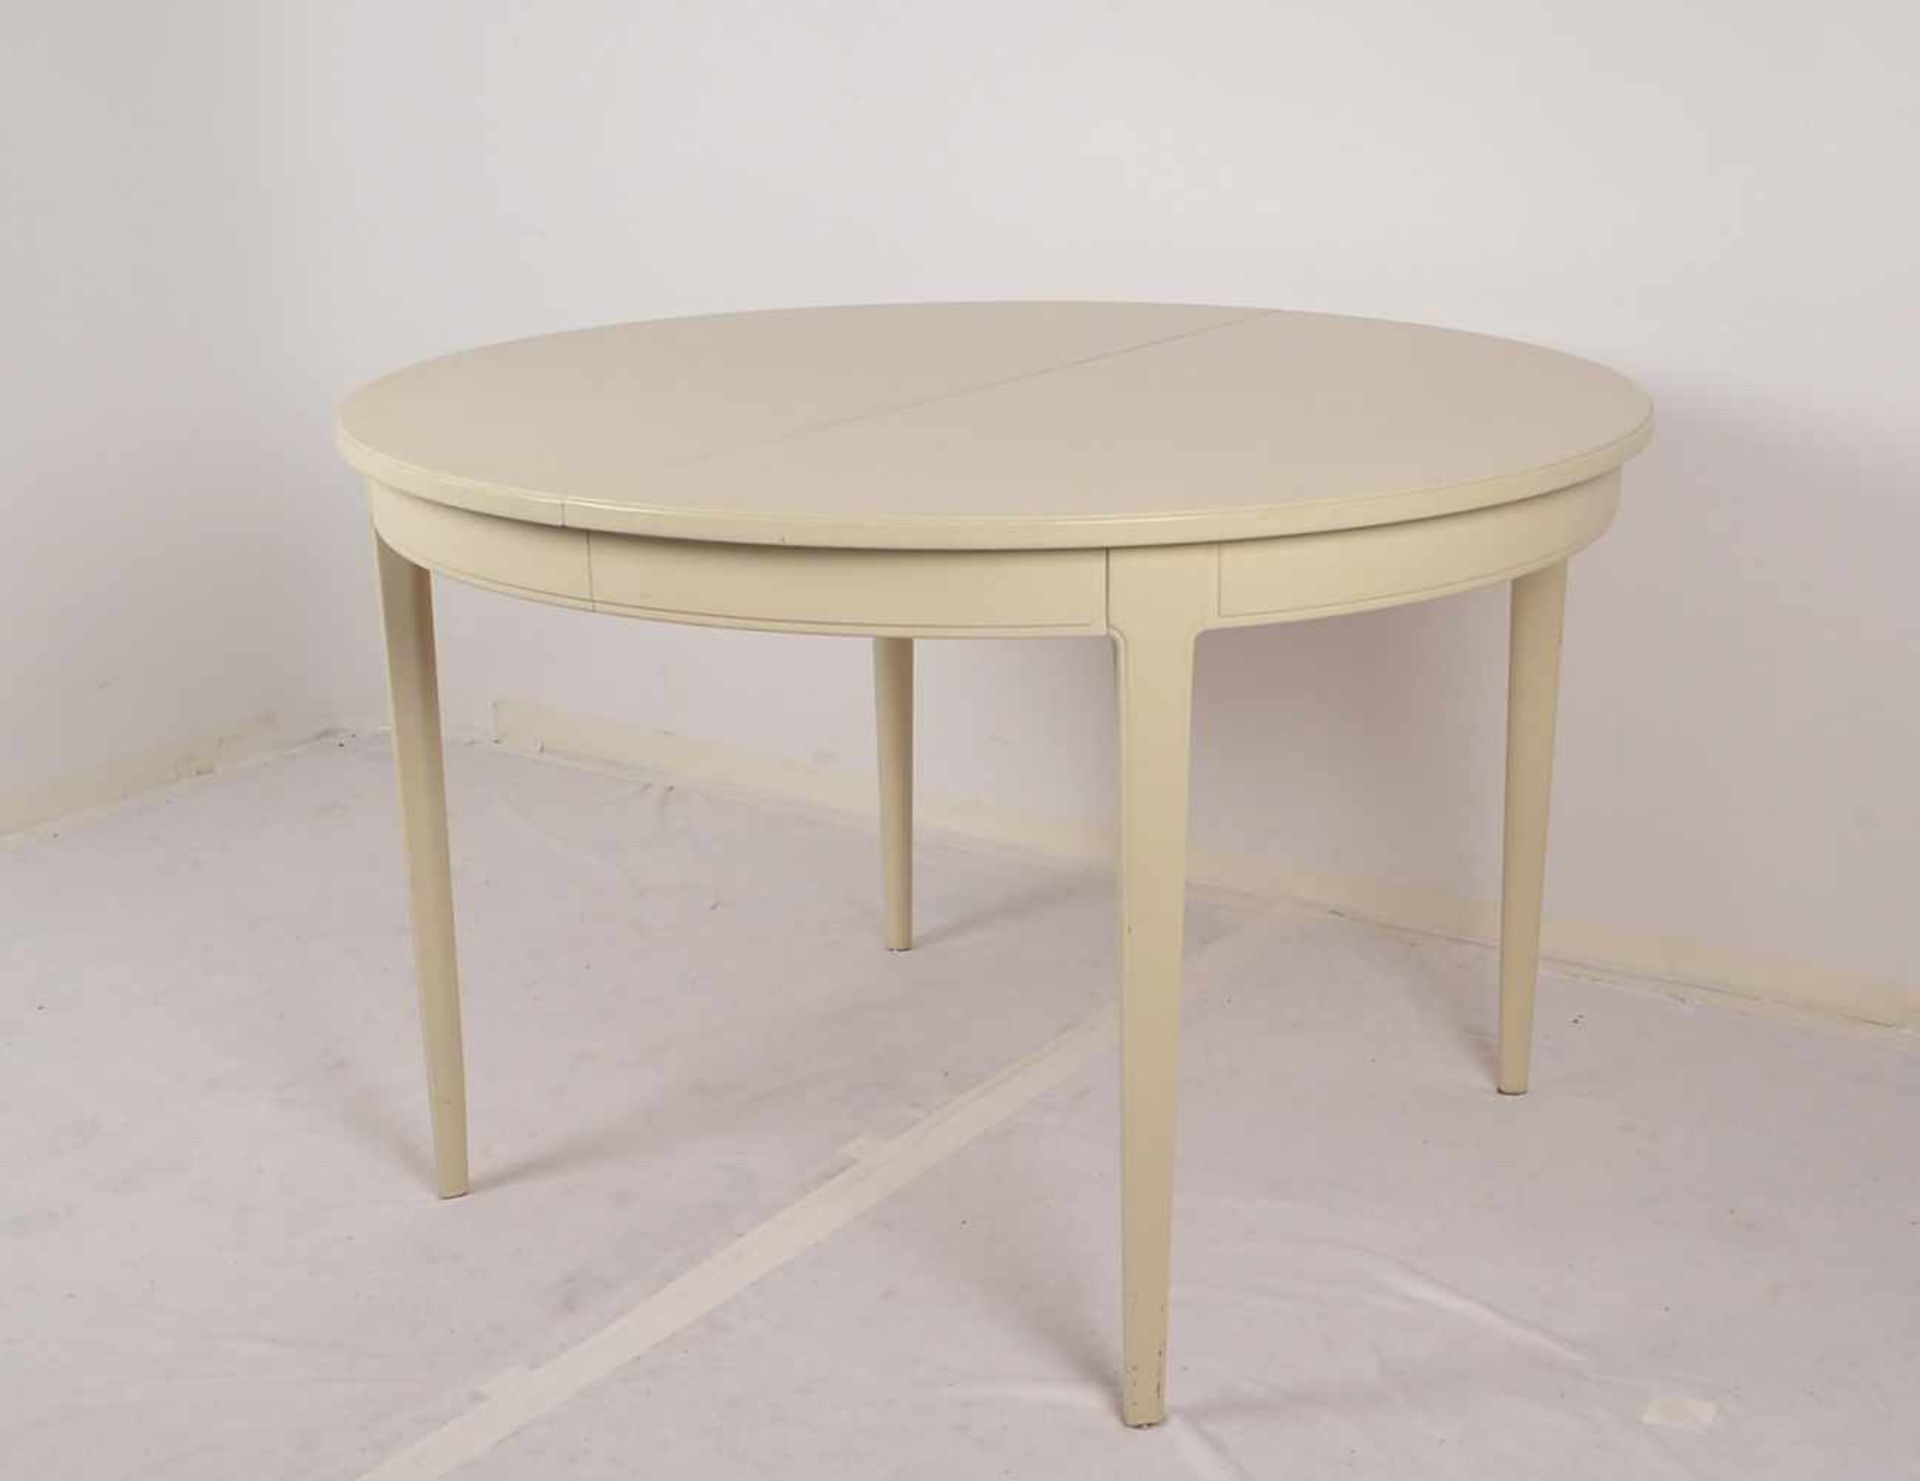 Bodafors/Schweden, Tisch, runde Form, creme-weiß gefasst, Entwurf: Carl Malmsten, ausziehbar -